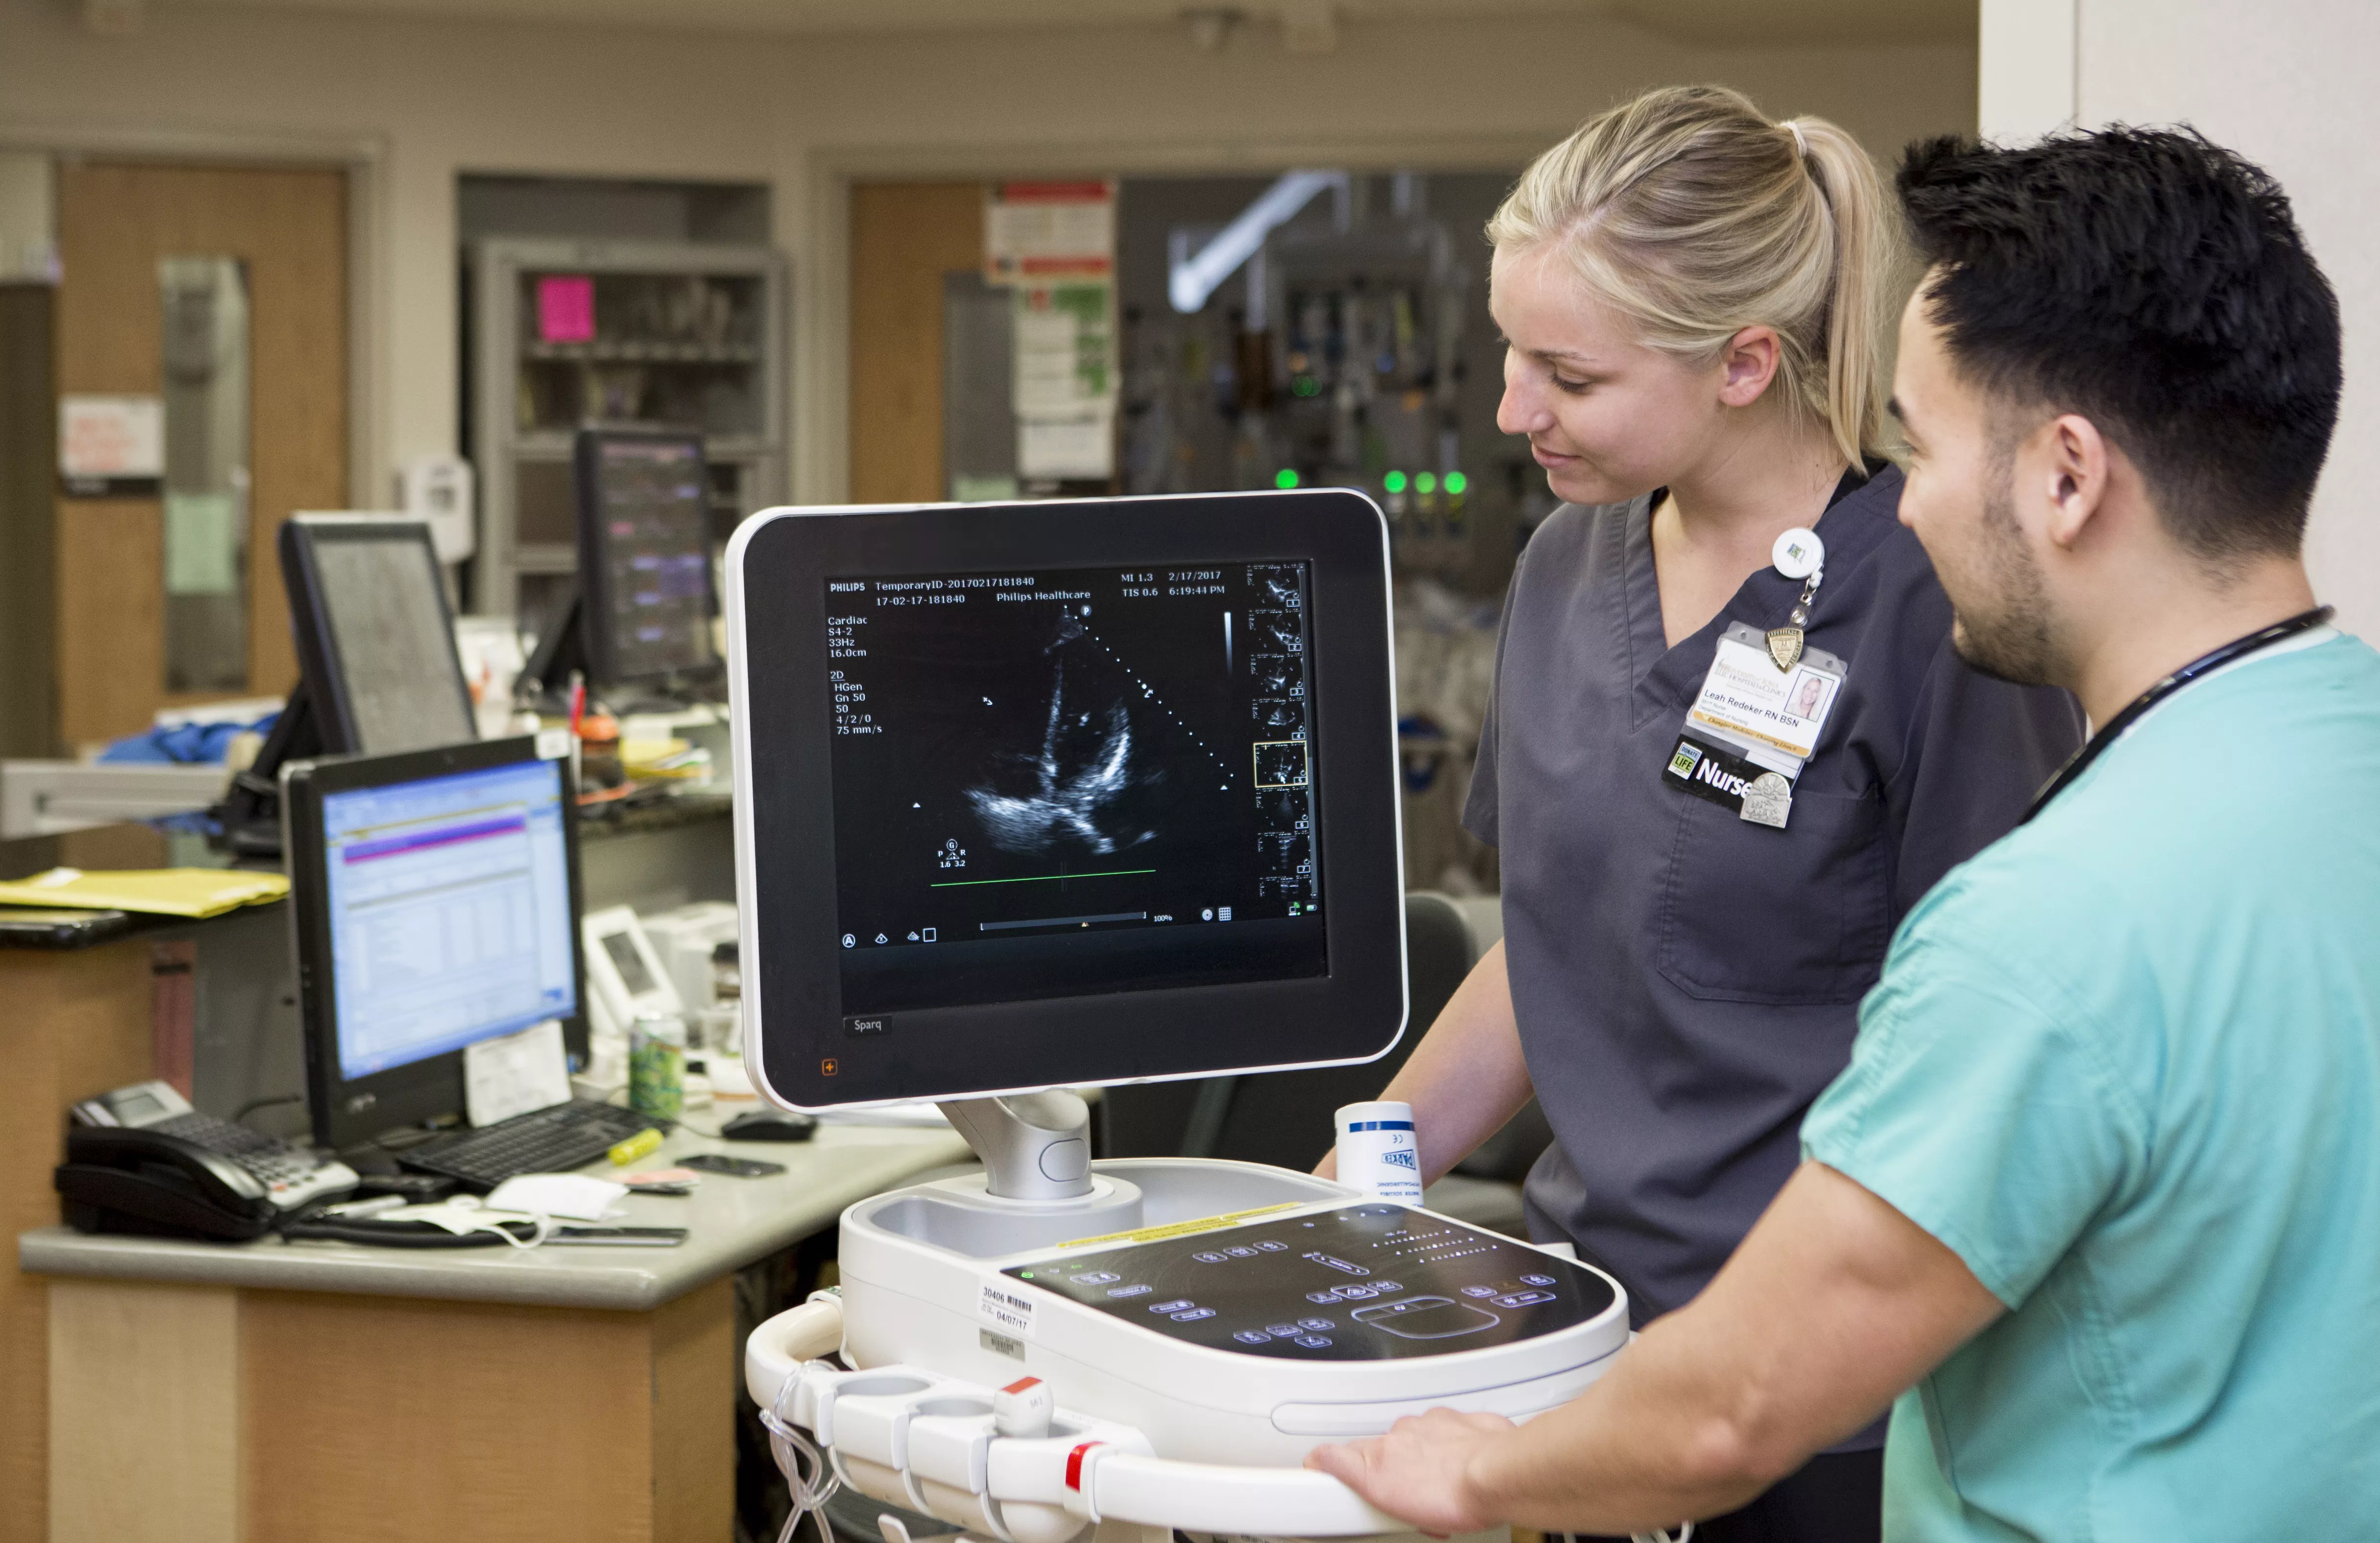 Two nurses examining patient condition via monitor